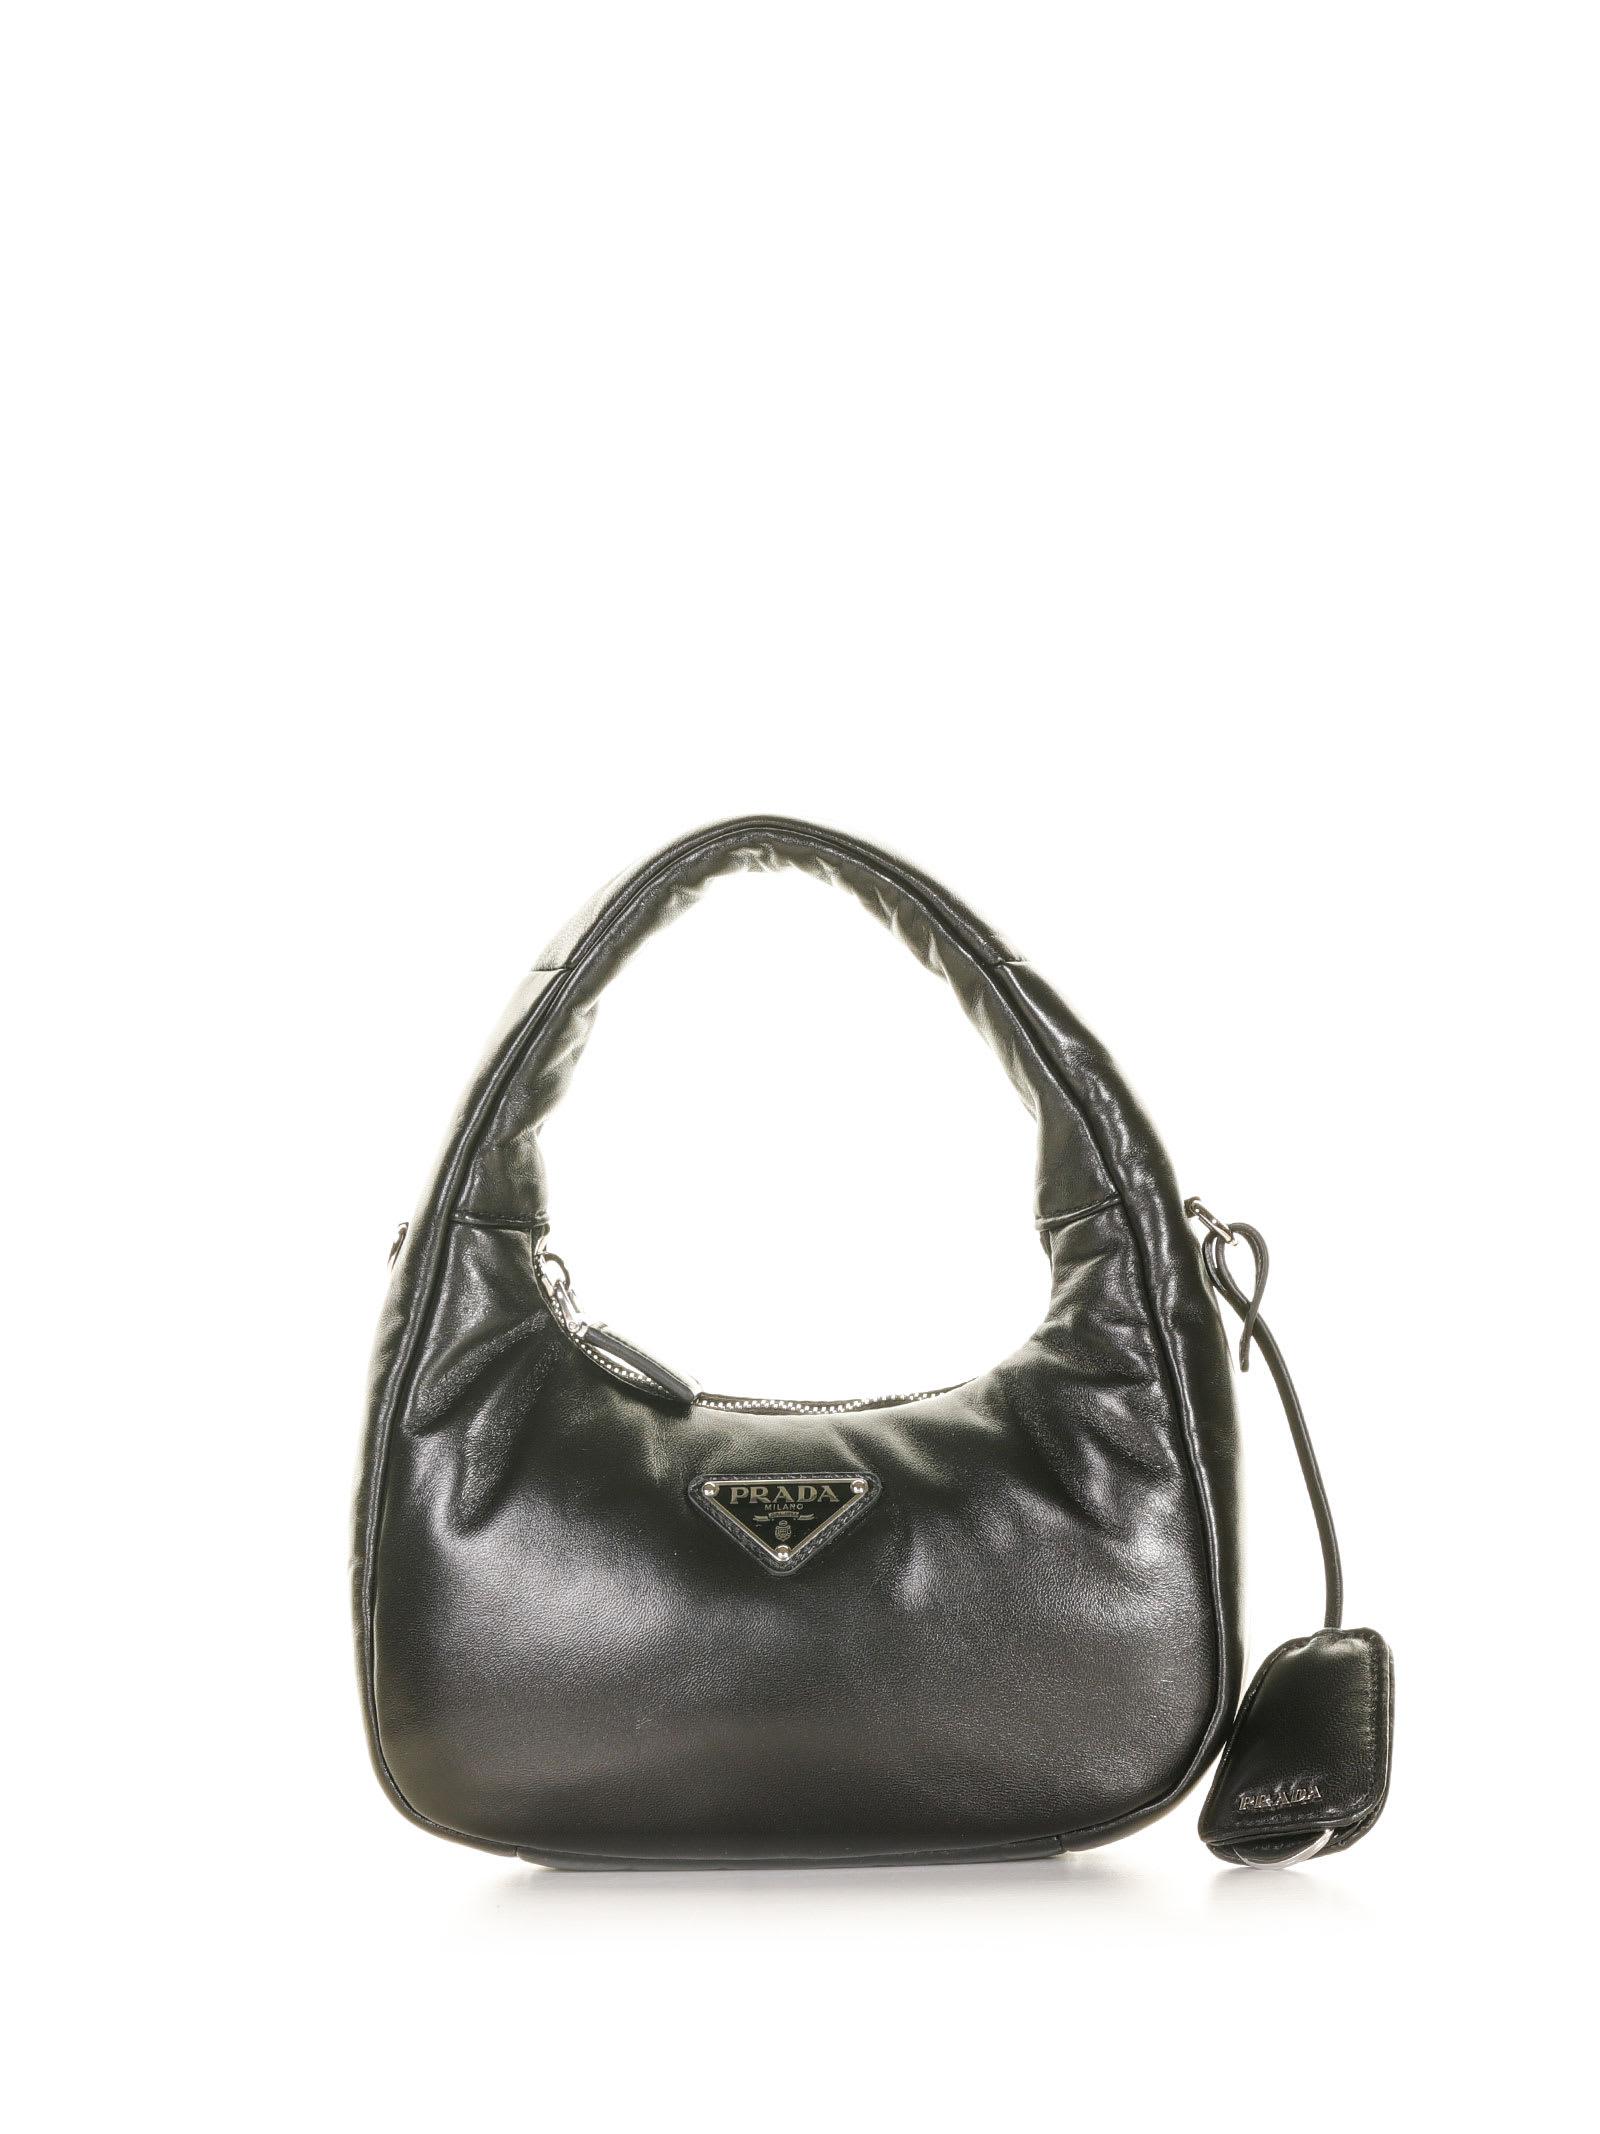 Prada Soft Mini Bag In Padded Nappa Leather in Black